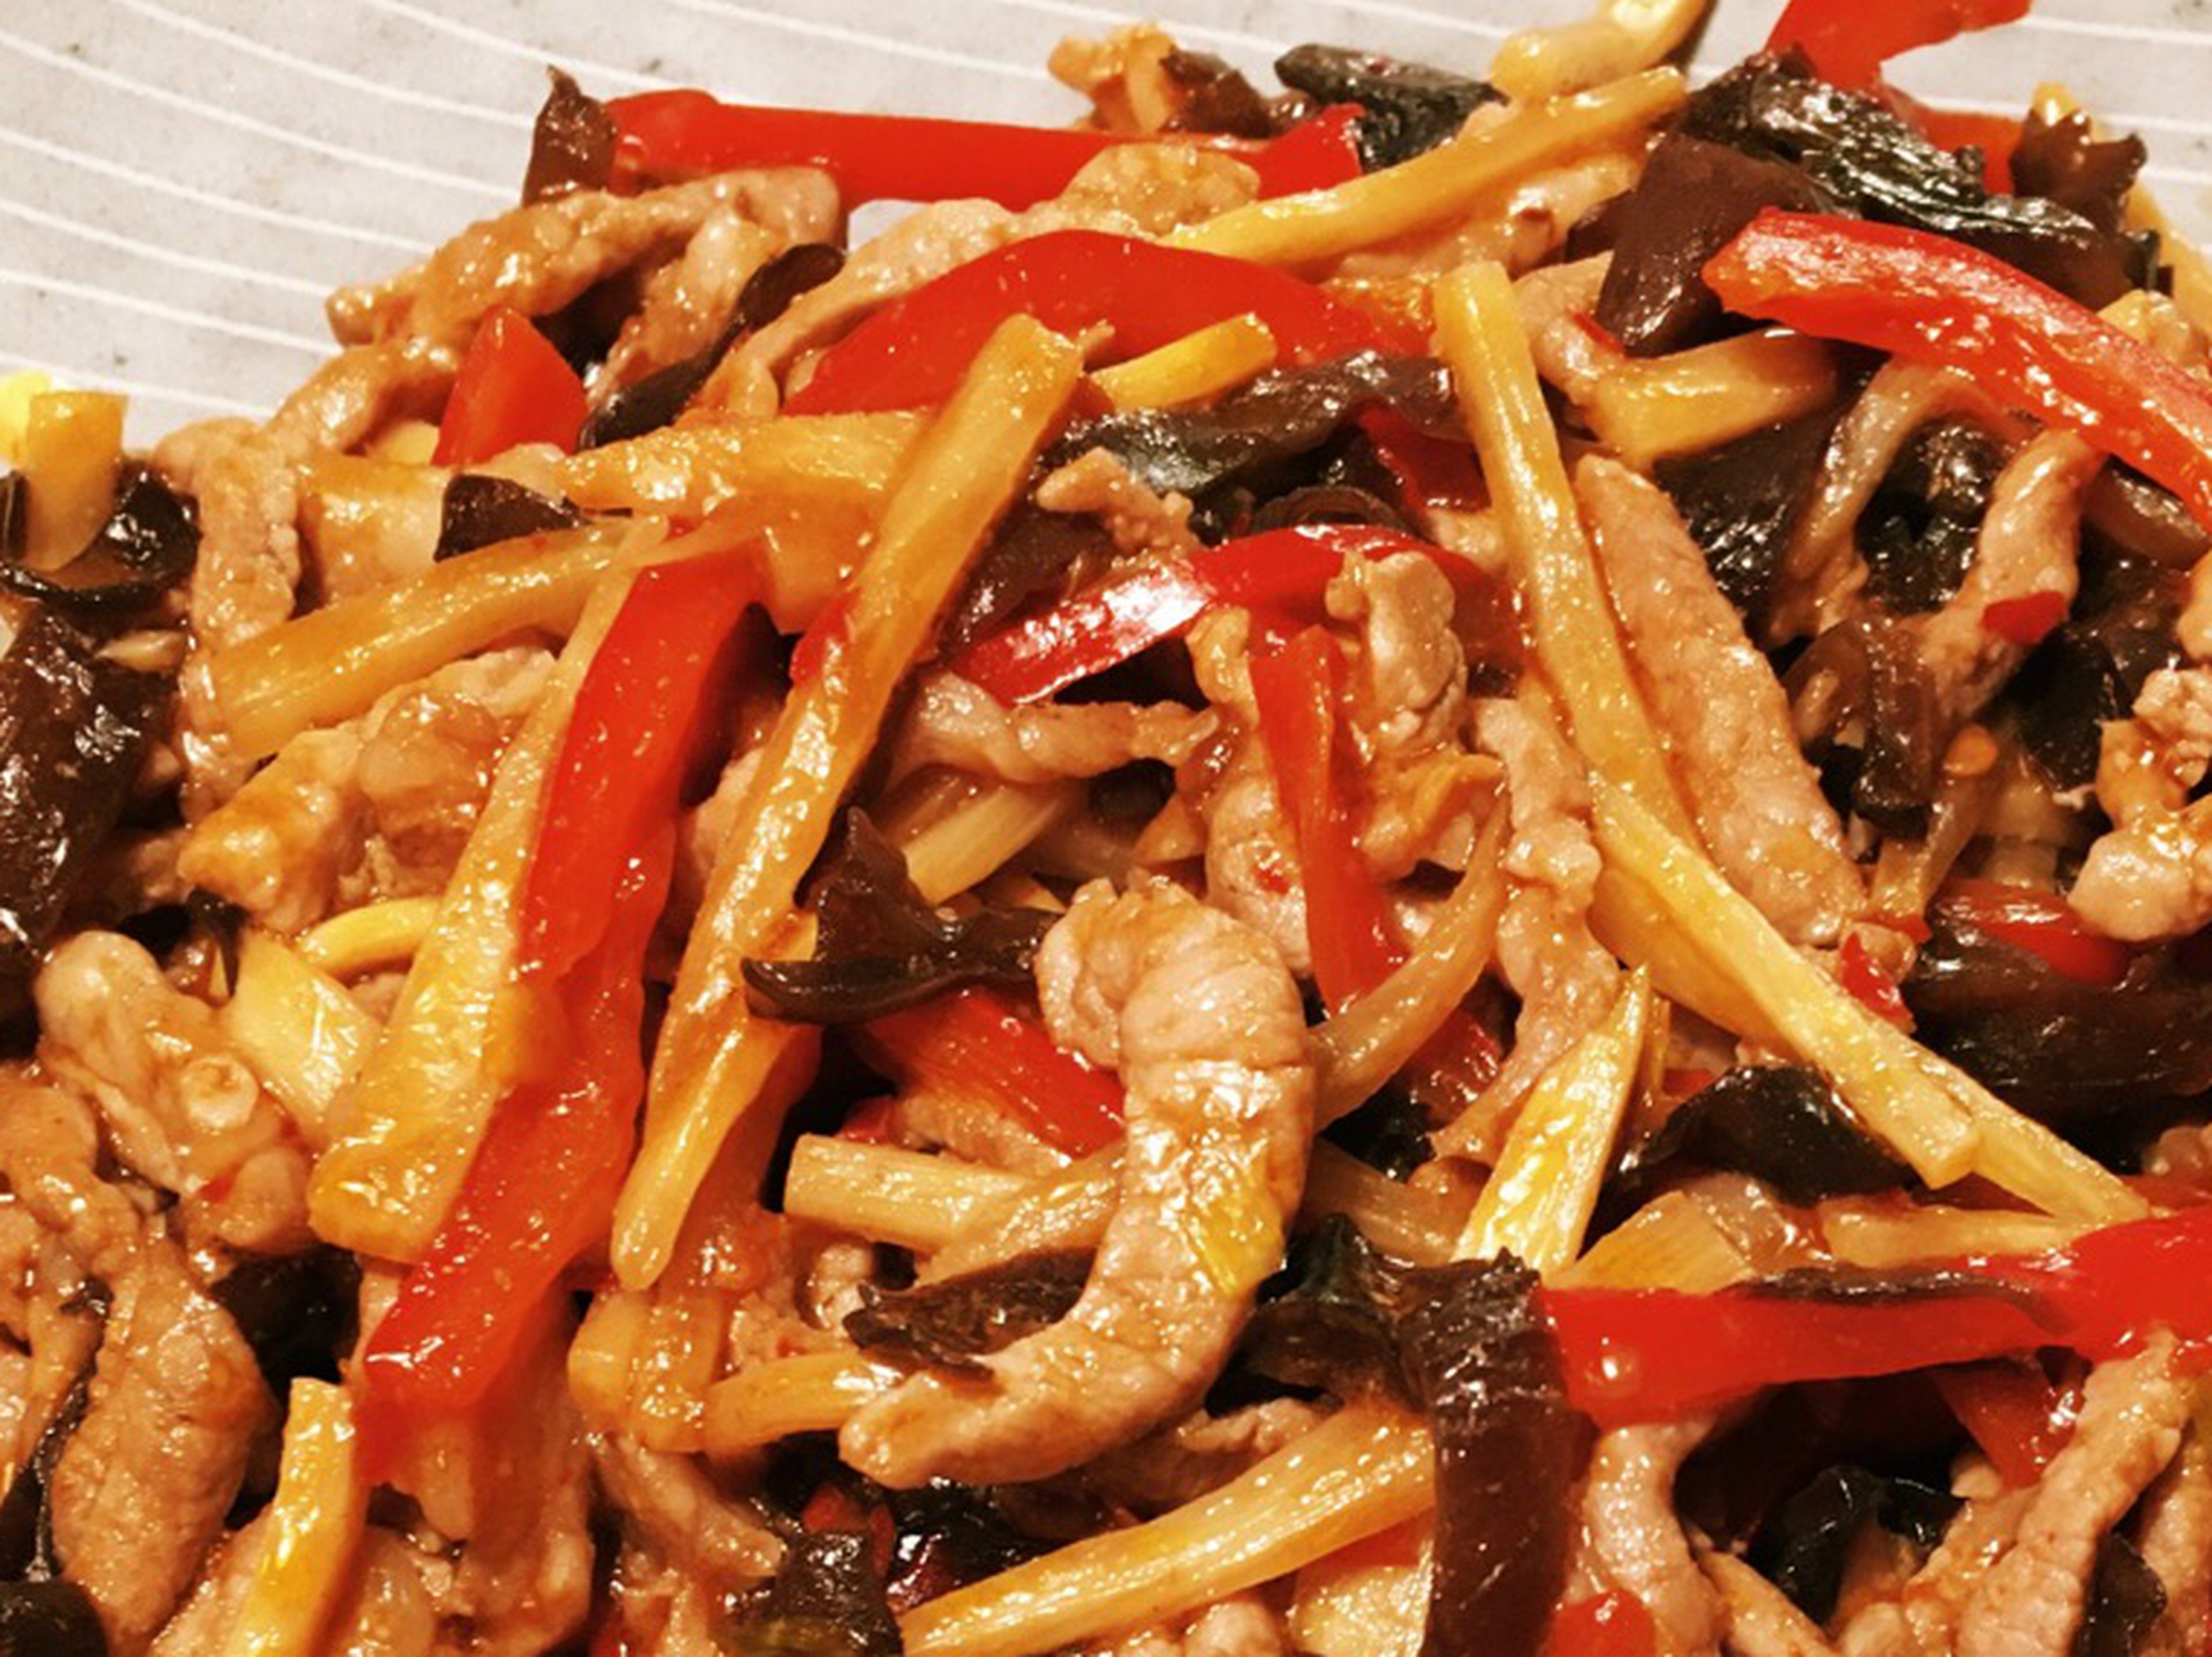 Pork stir-fry with bamboo shoots and mushrooms (Yú xiāng ròu sī)